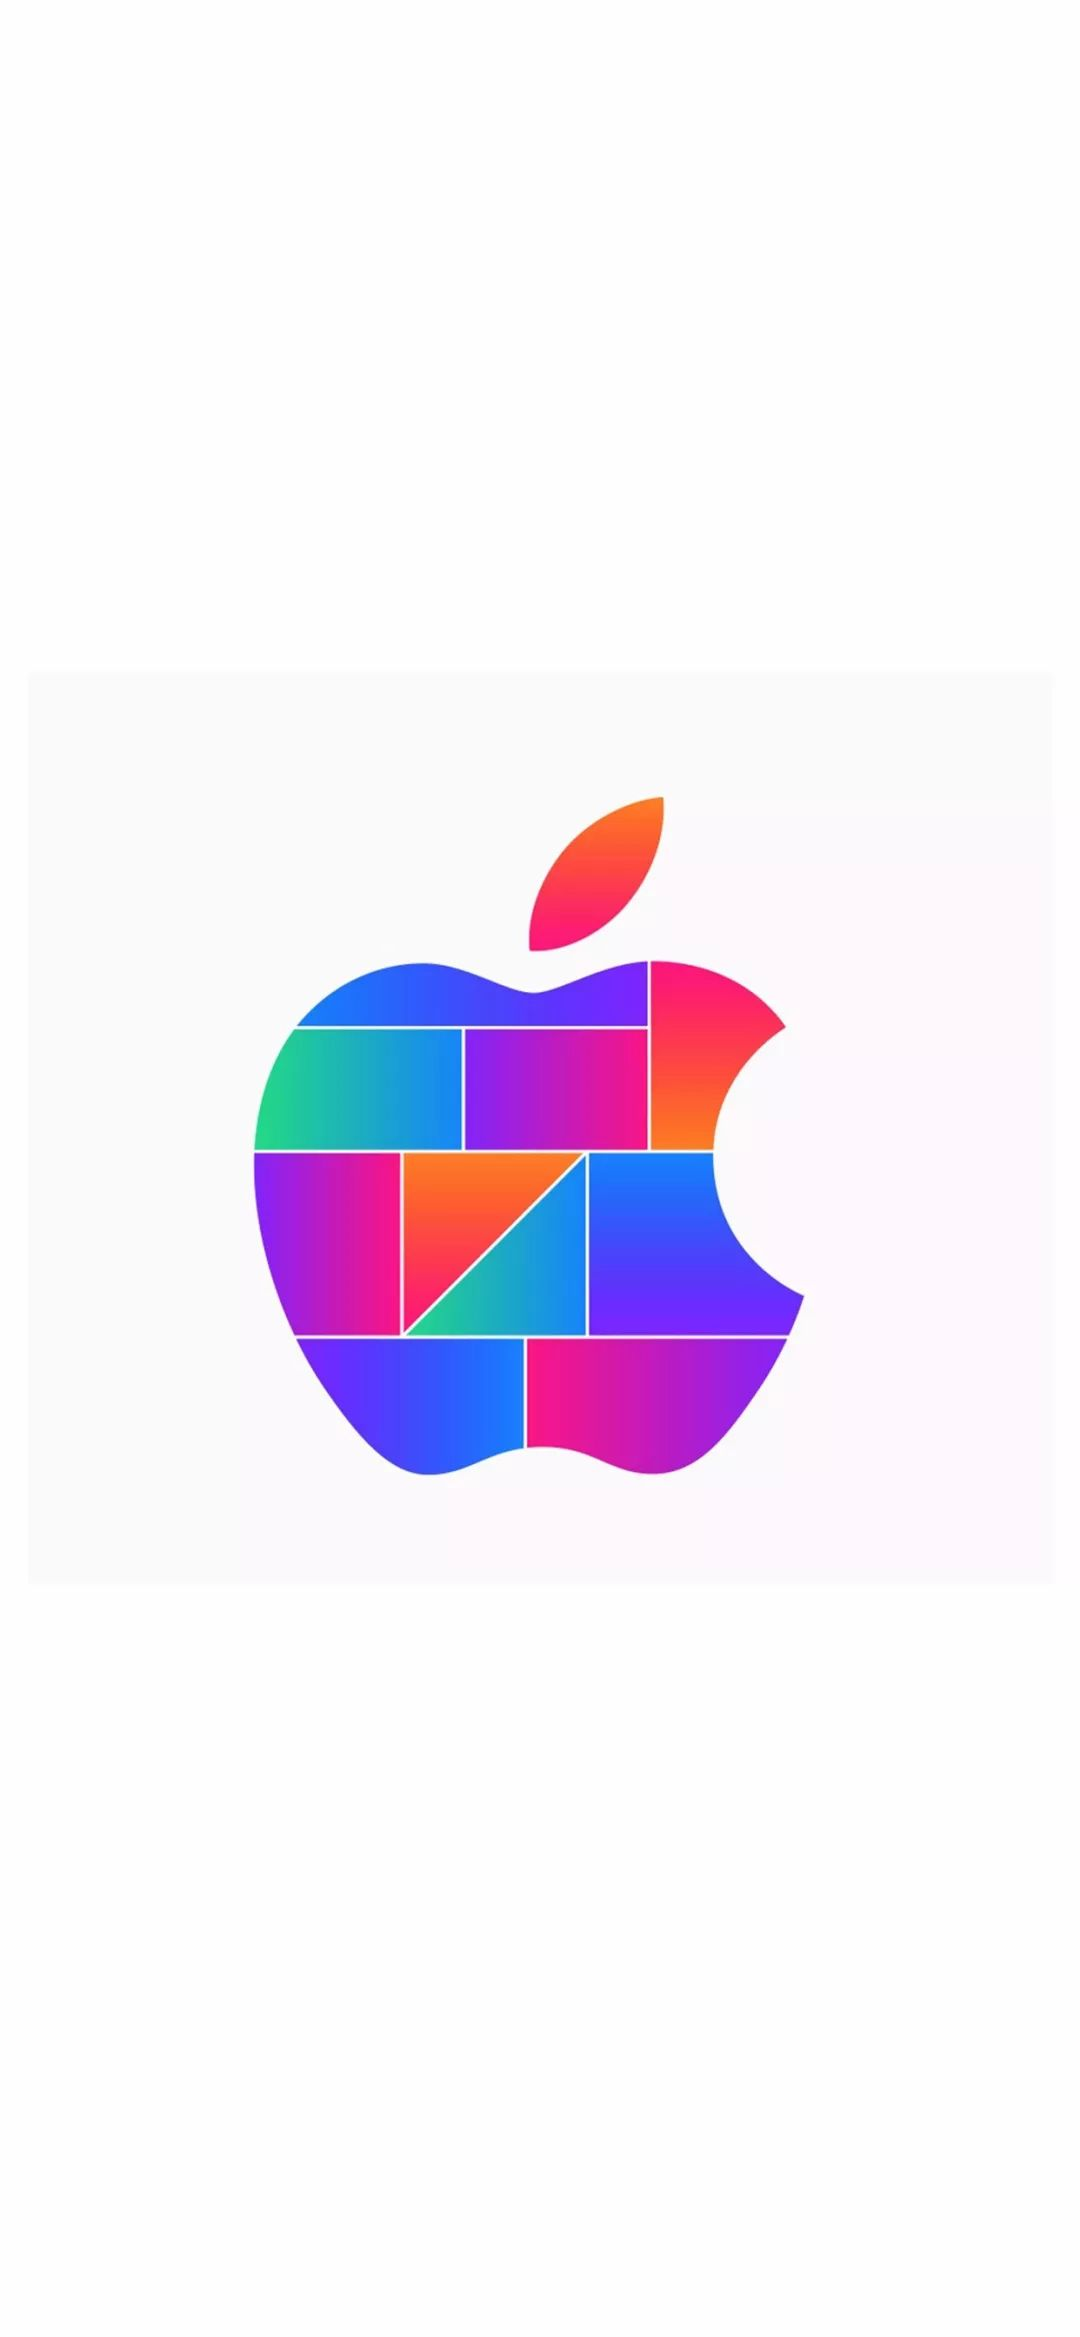 苹果logo原图_壁纸 | 新苹果 LOGO 壁纸 (https://mushiming.com/)  第5张